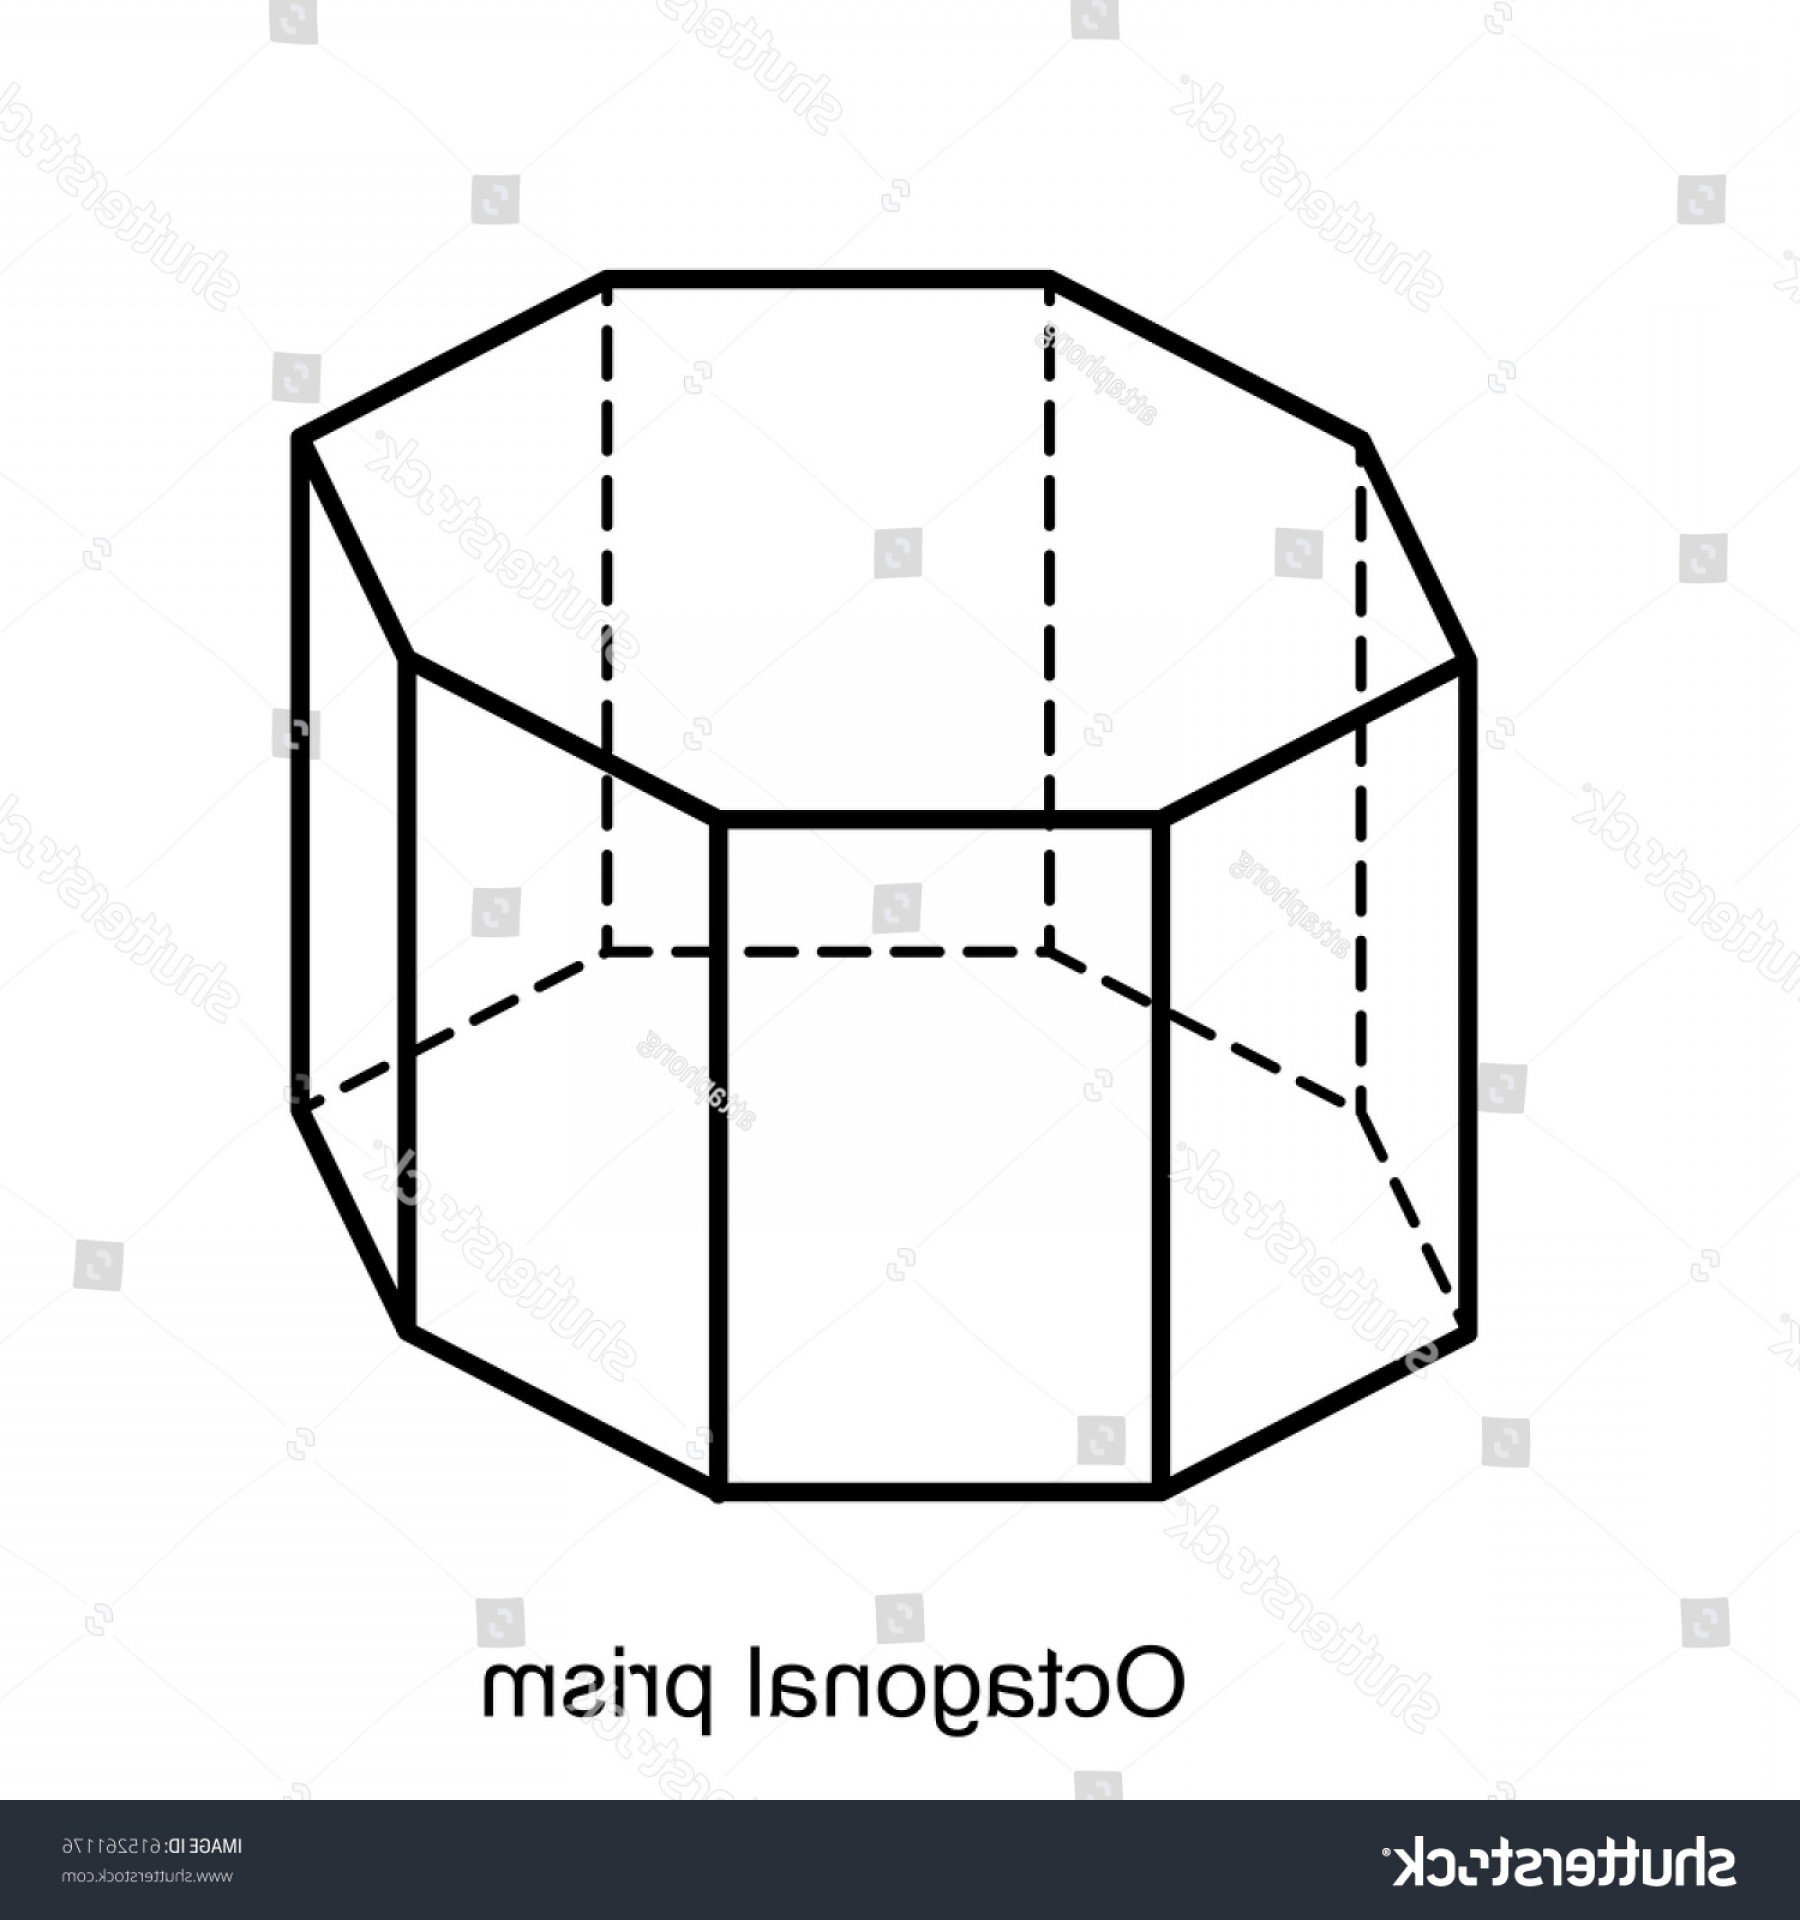 Правильная 8угольная призса